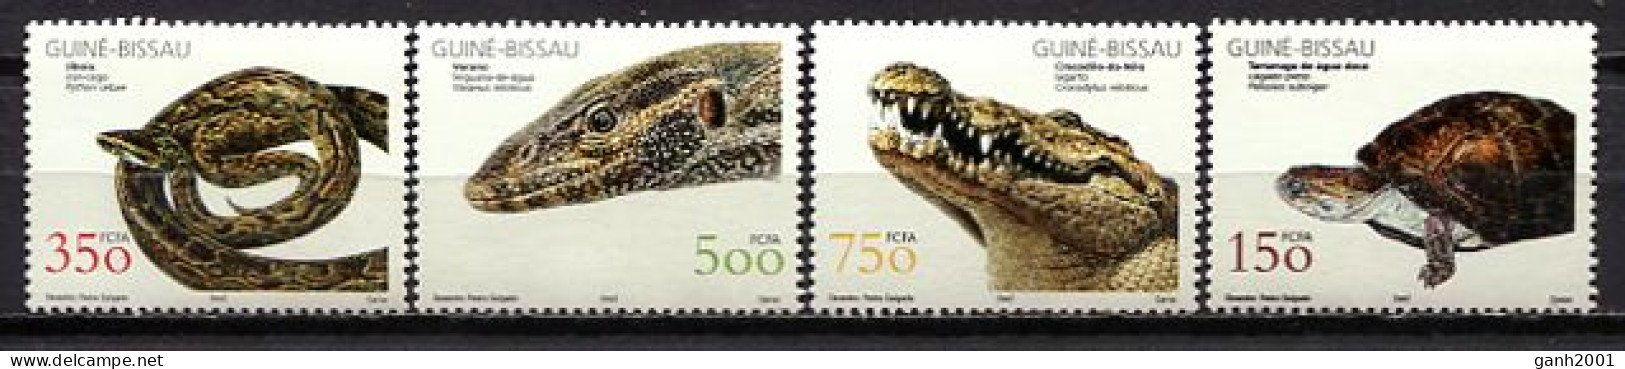 Guinea Bissau 2002 / Reptiles Snakes Turtles MNH Tortugas Serpientes Schlangen Schildkröte / Cu0231  33-42 - Serpents